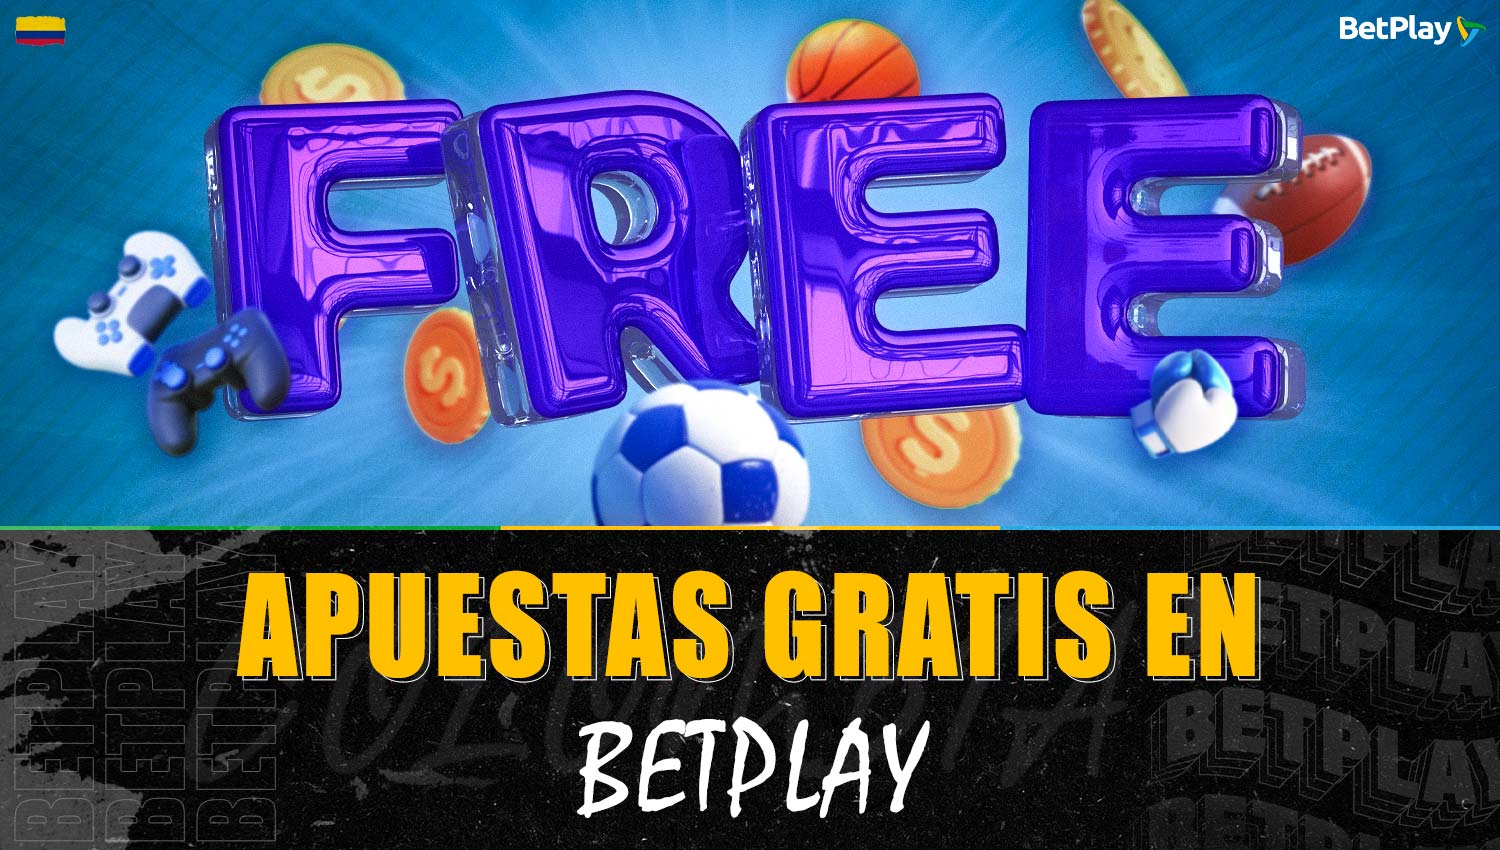 Betplay ofrece apuestas deportivas y de esports gratuitas para jugadores colombianos